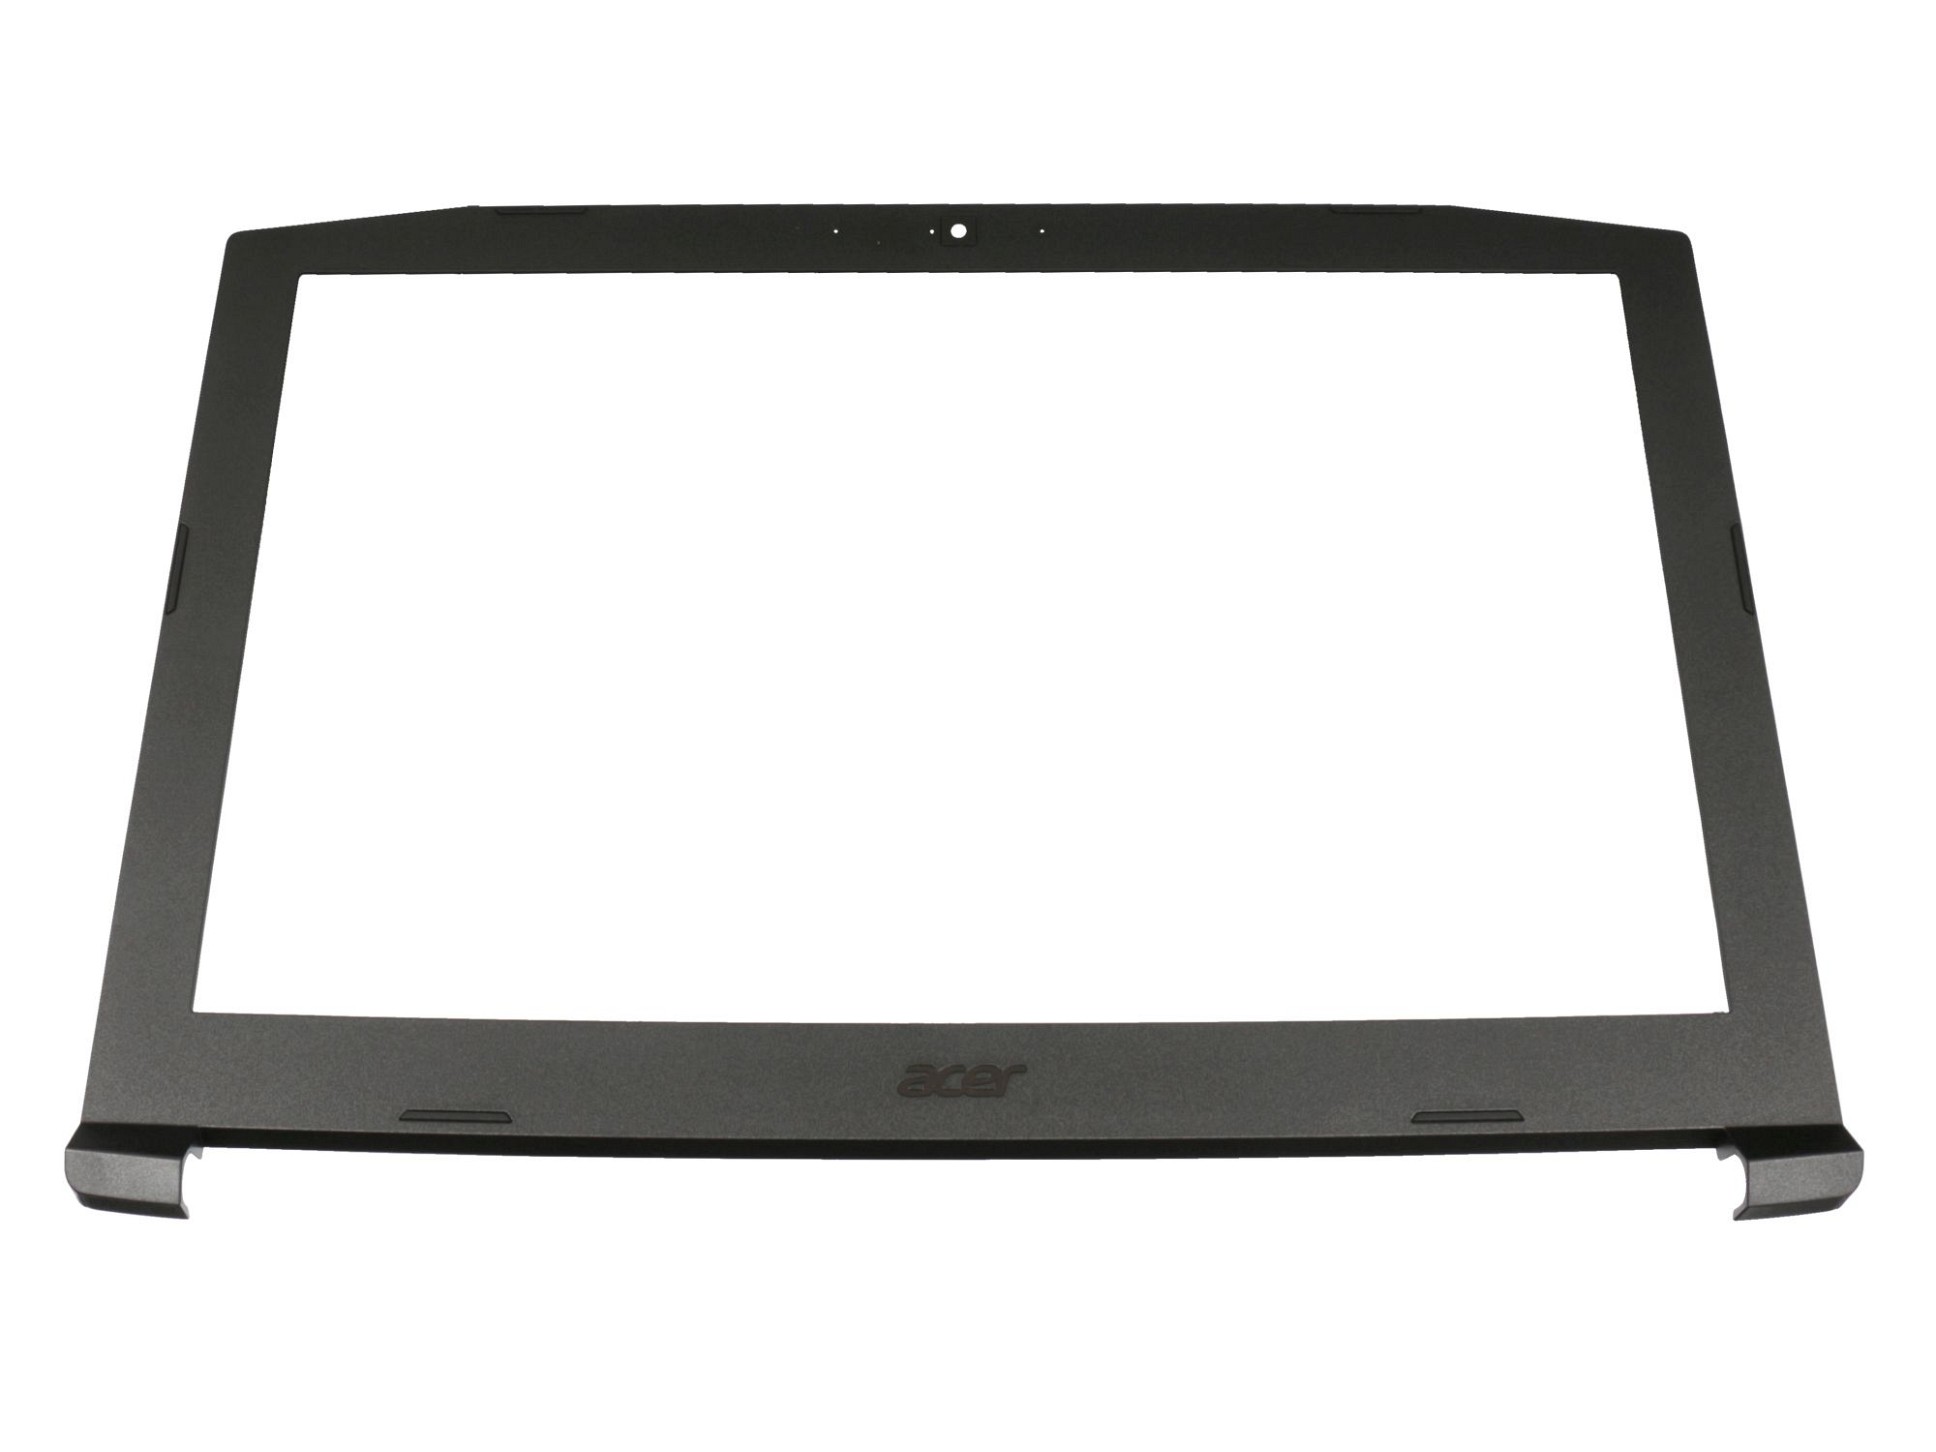 Displayrahmen 39,6cm (15,6 Zoll) schwarz für Acer Nitro 5 (AN515-51)